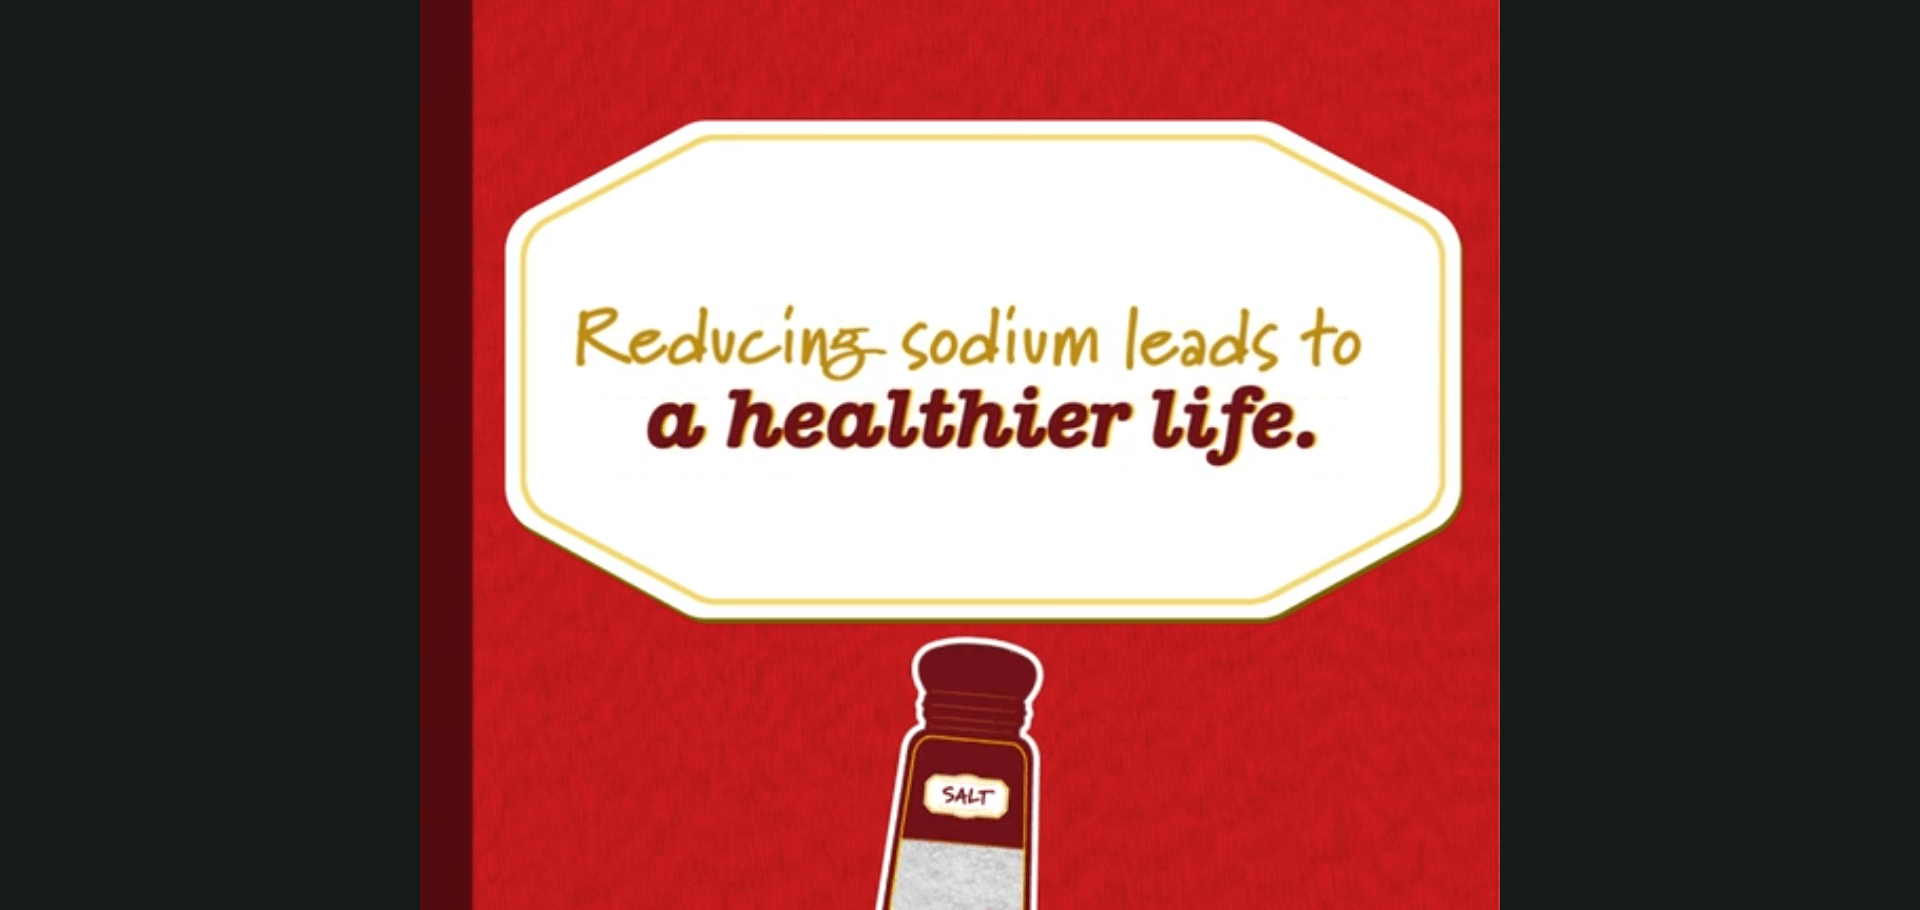 Réduire le sodium mène à une vie plus saine.